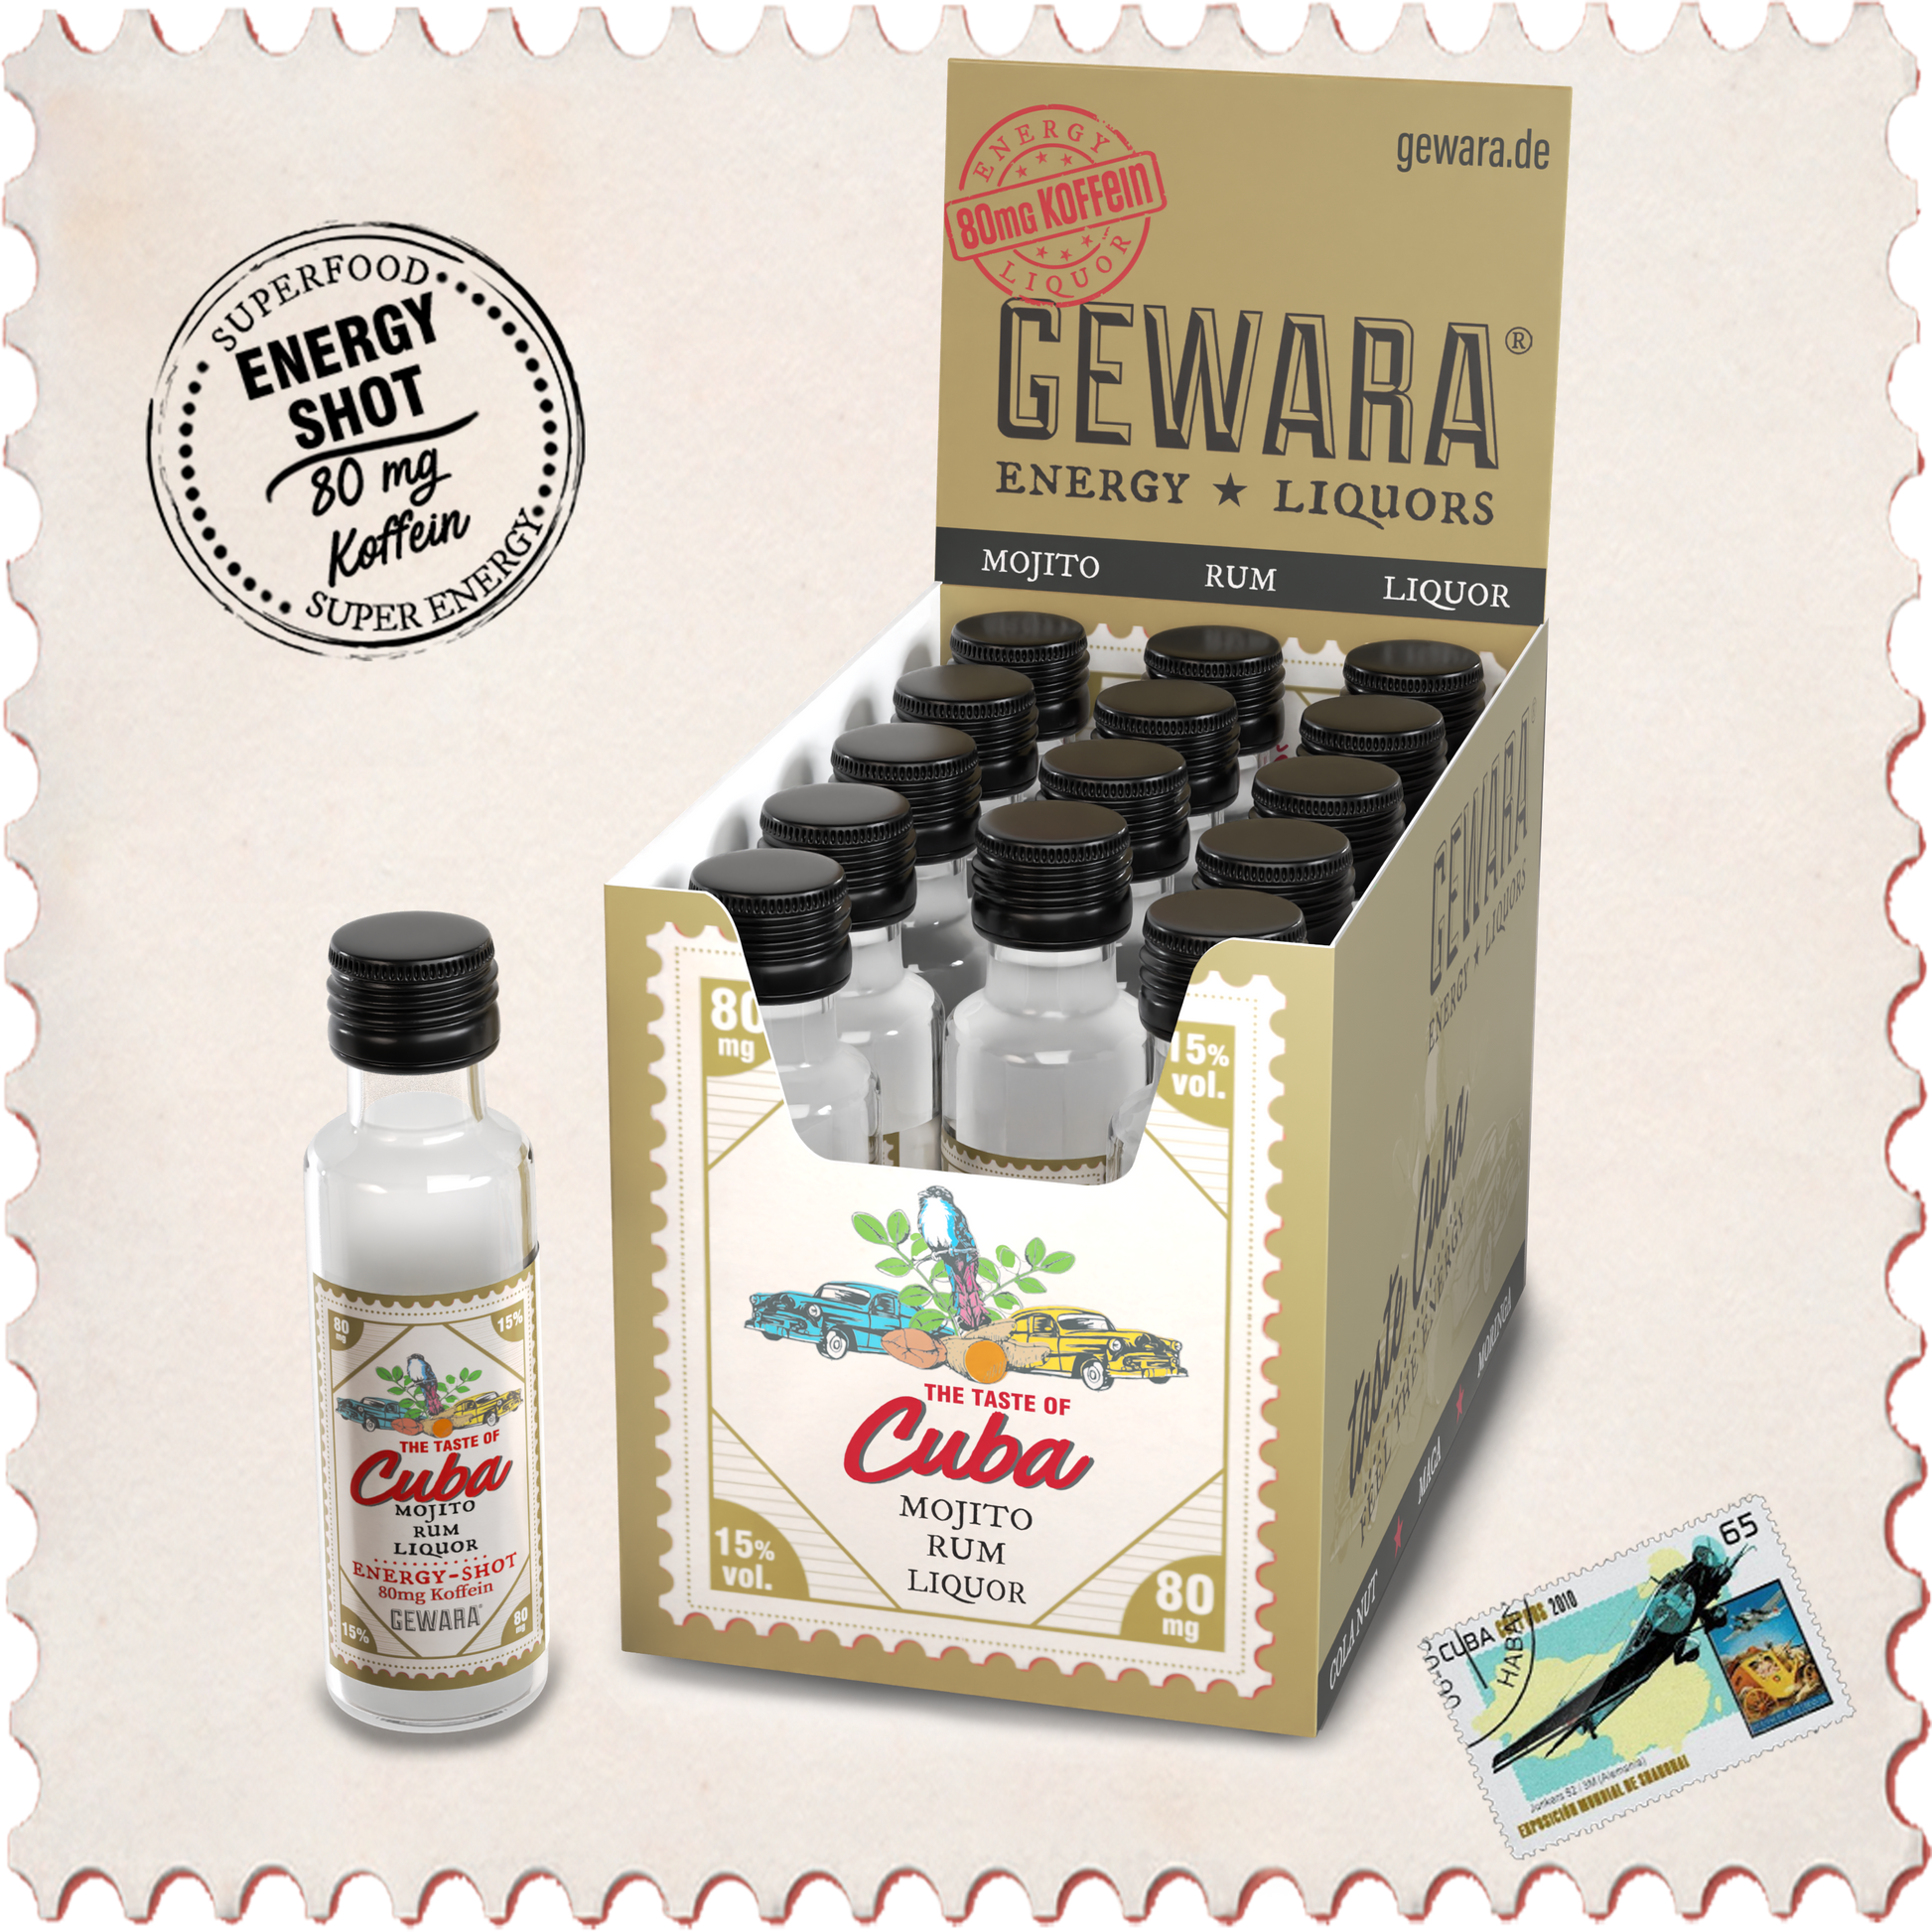 gewara-cuba-box-open